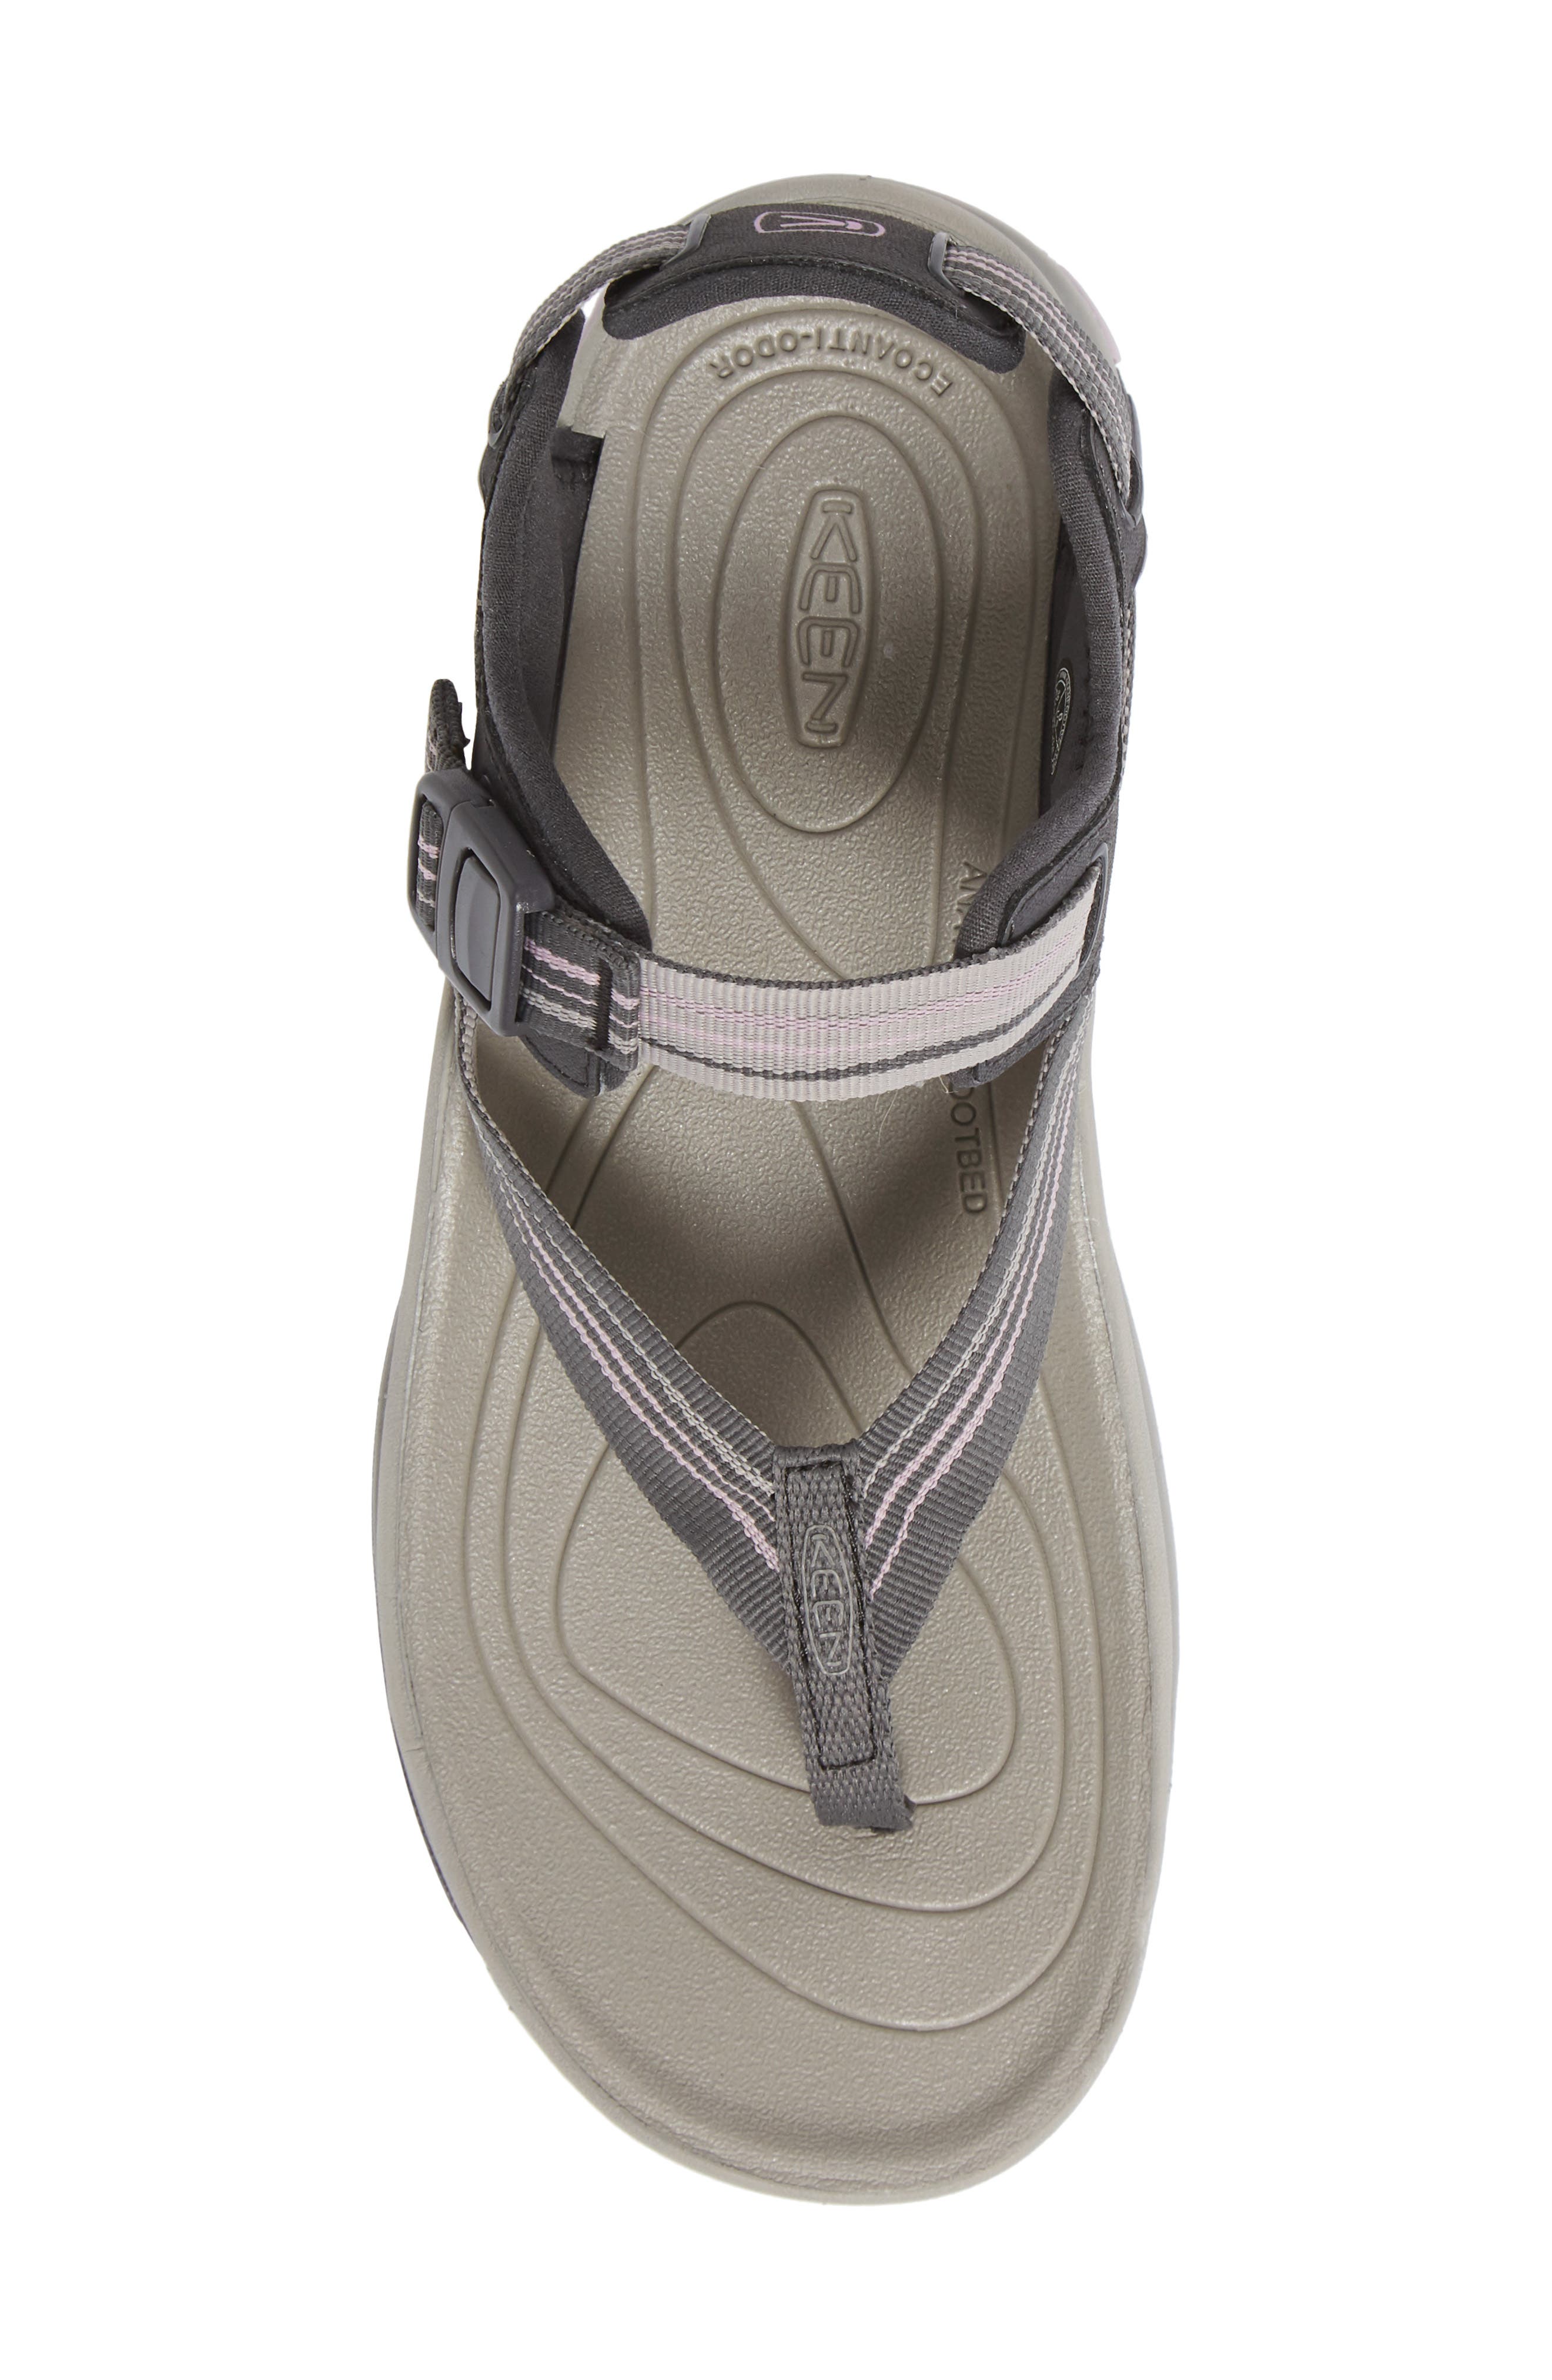 Keen Terradora Ii Toe Post Sandal In Grey/ Dawn Pink Faux Leather